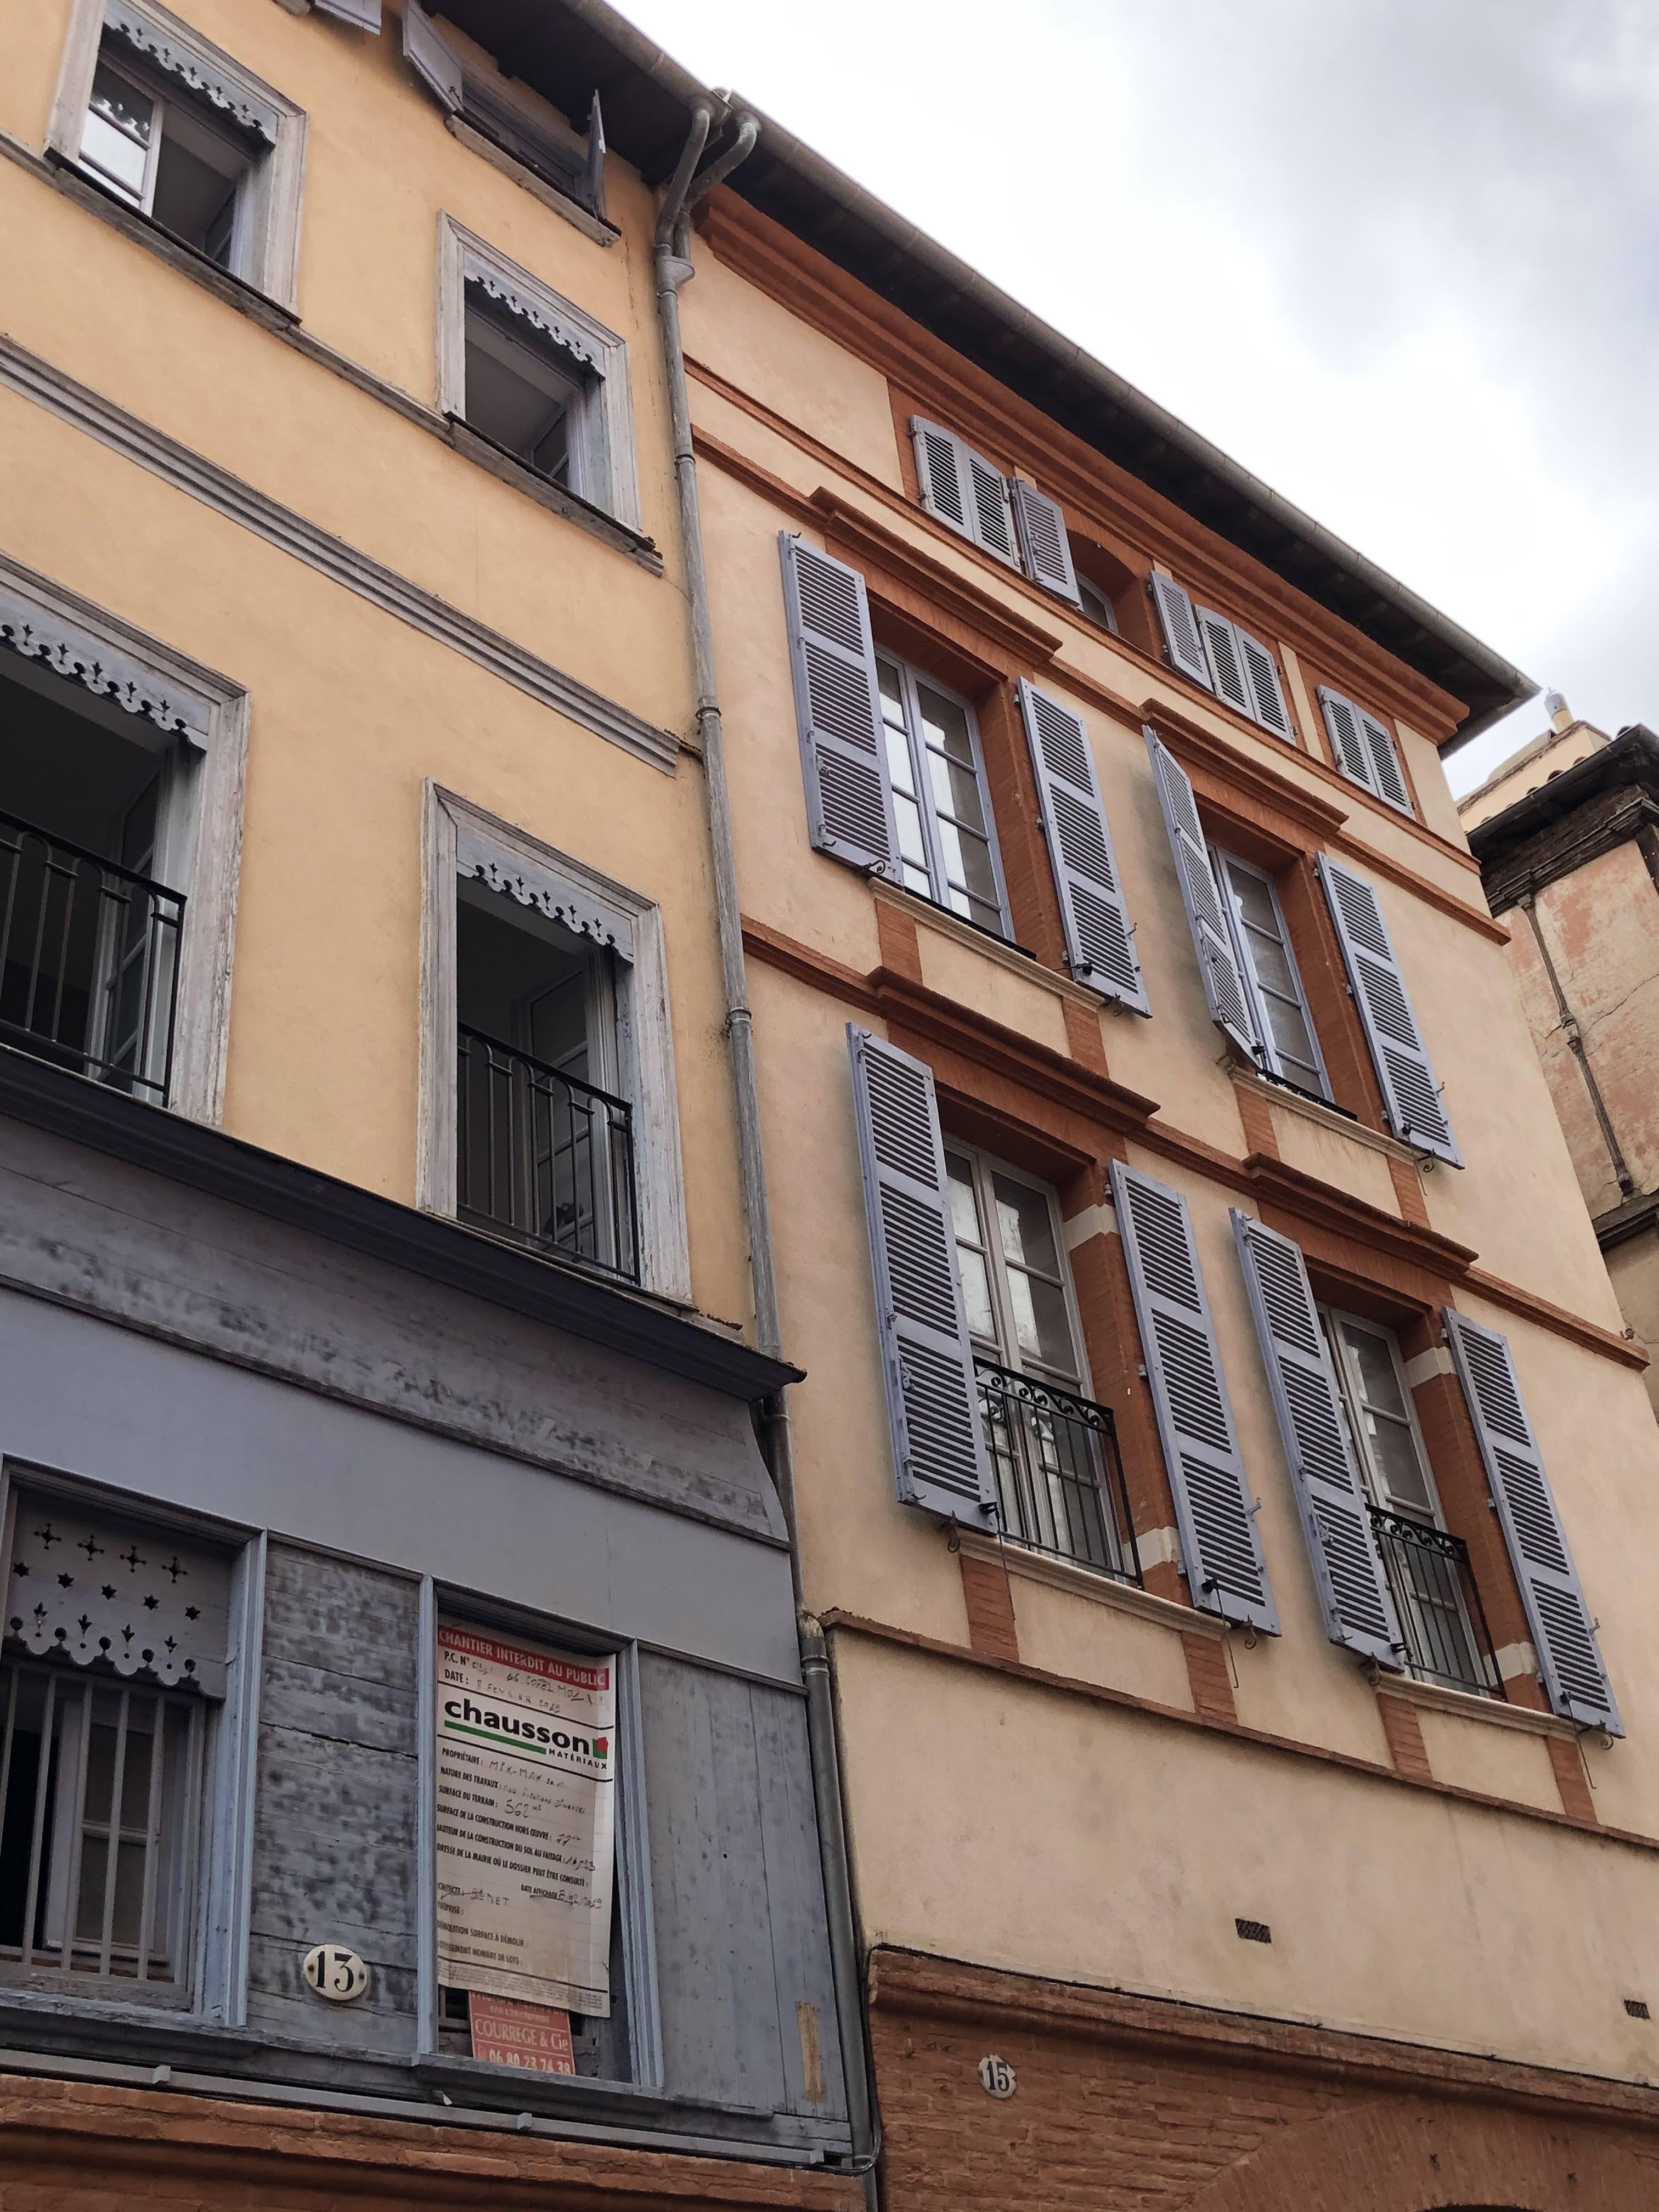 T3 1er étage 47 m2 Toulouse rue Malcousinat Hyper centre Métro A Esquirol (1703) - IMG_3612.jpg